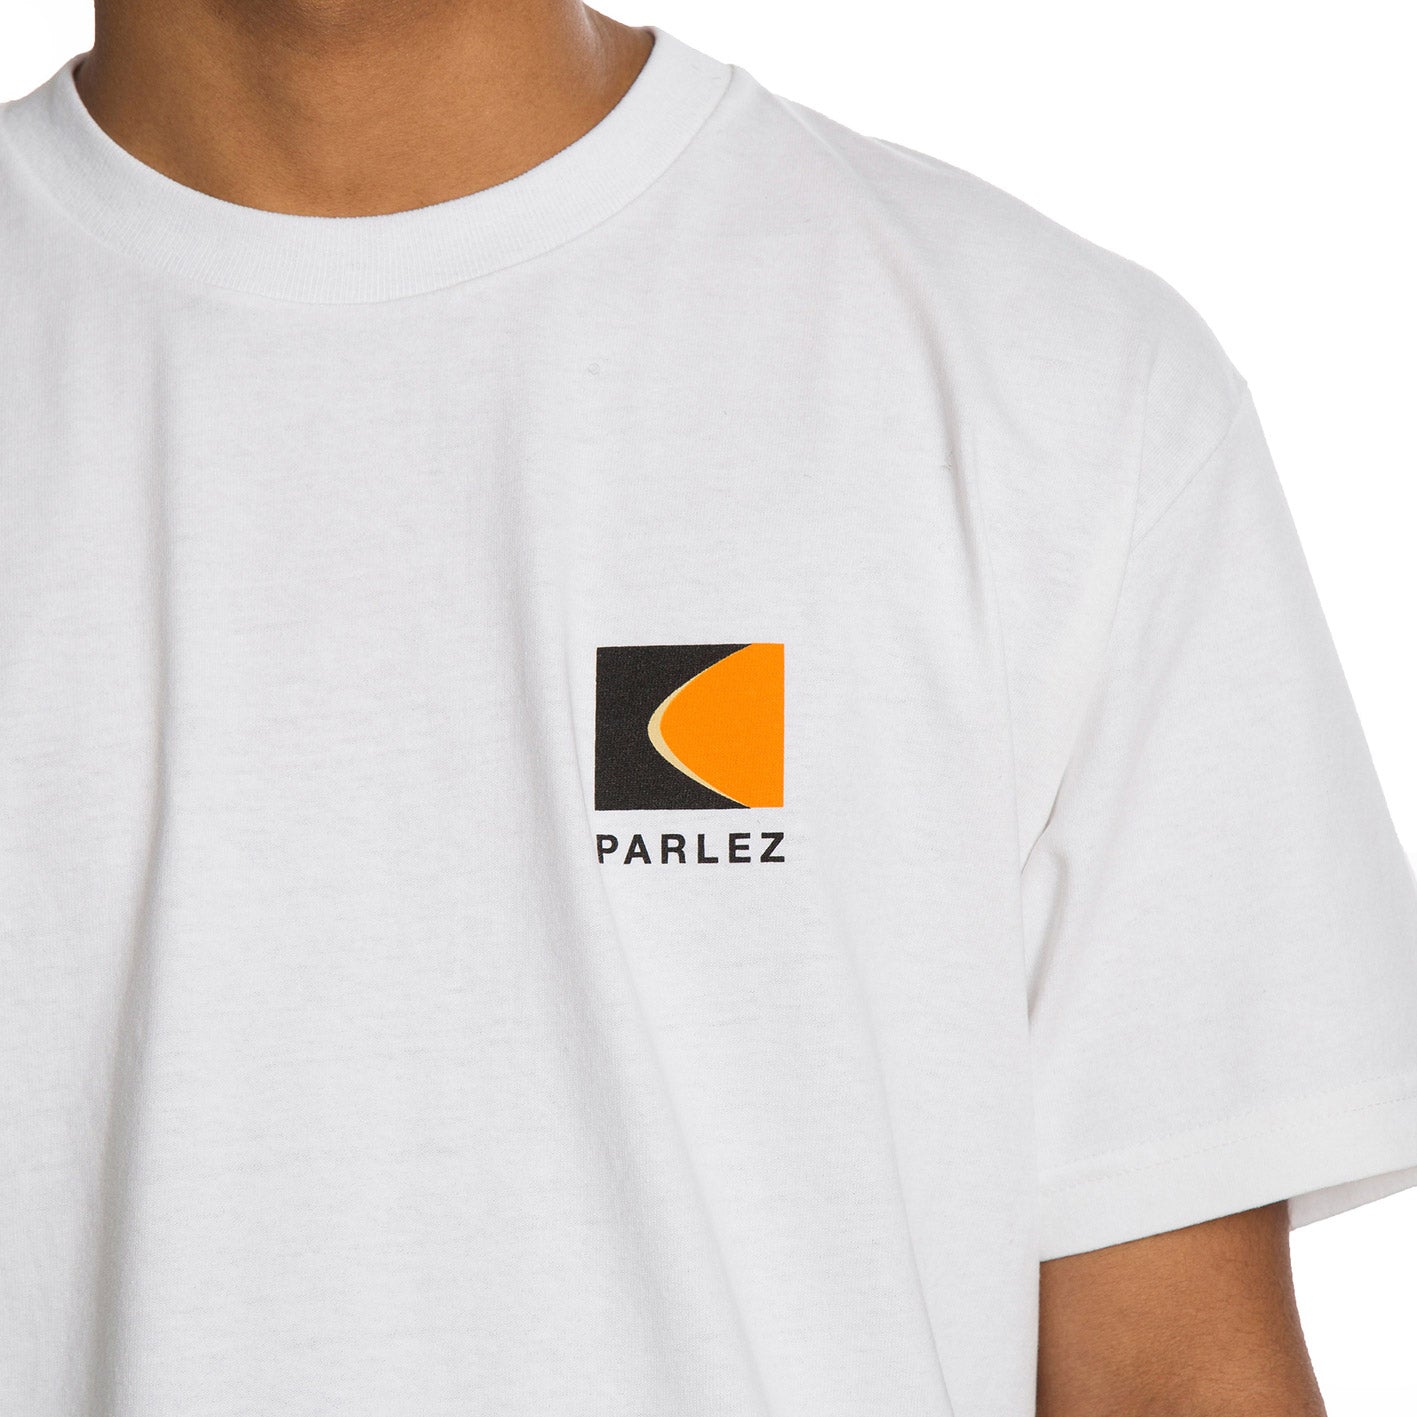 Parlez Camiseta Coastal - PARHW20860-WHT - Colección Chico